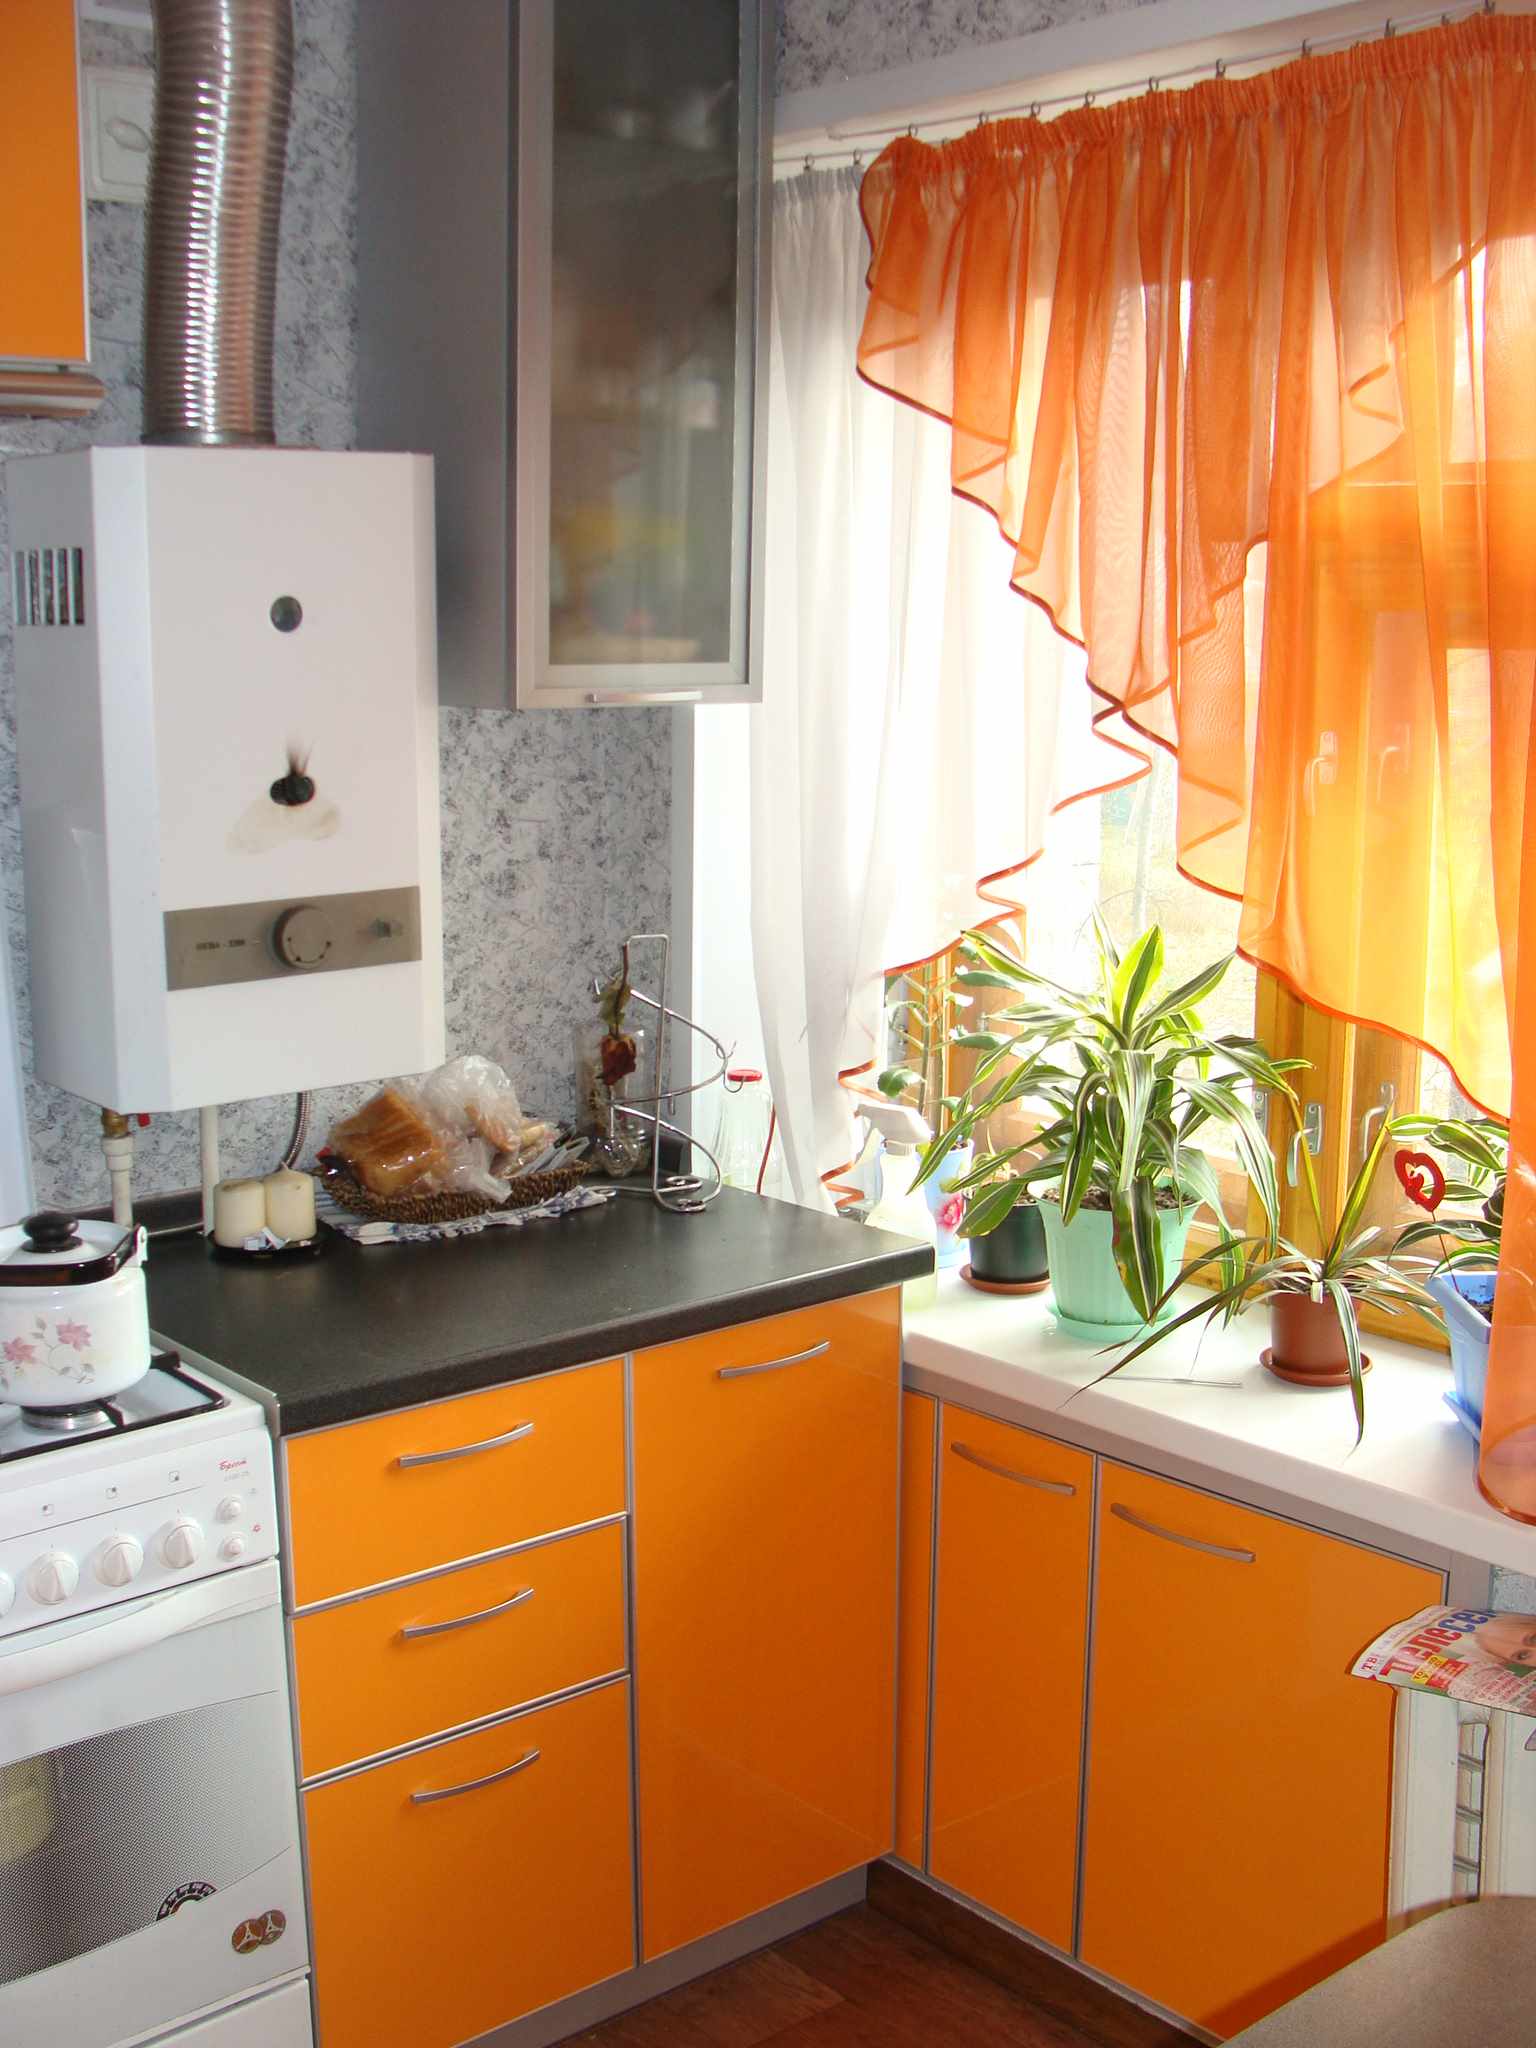 Ένα παράδειγμα ενός όμορφου εσωτερικού χώρου κουζίνας με λέβητα αερίου